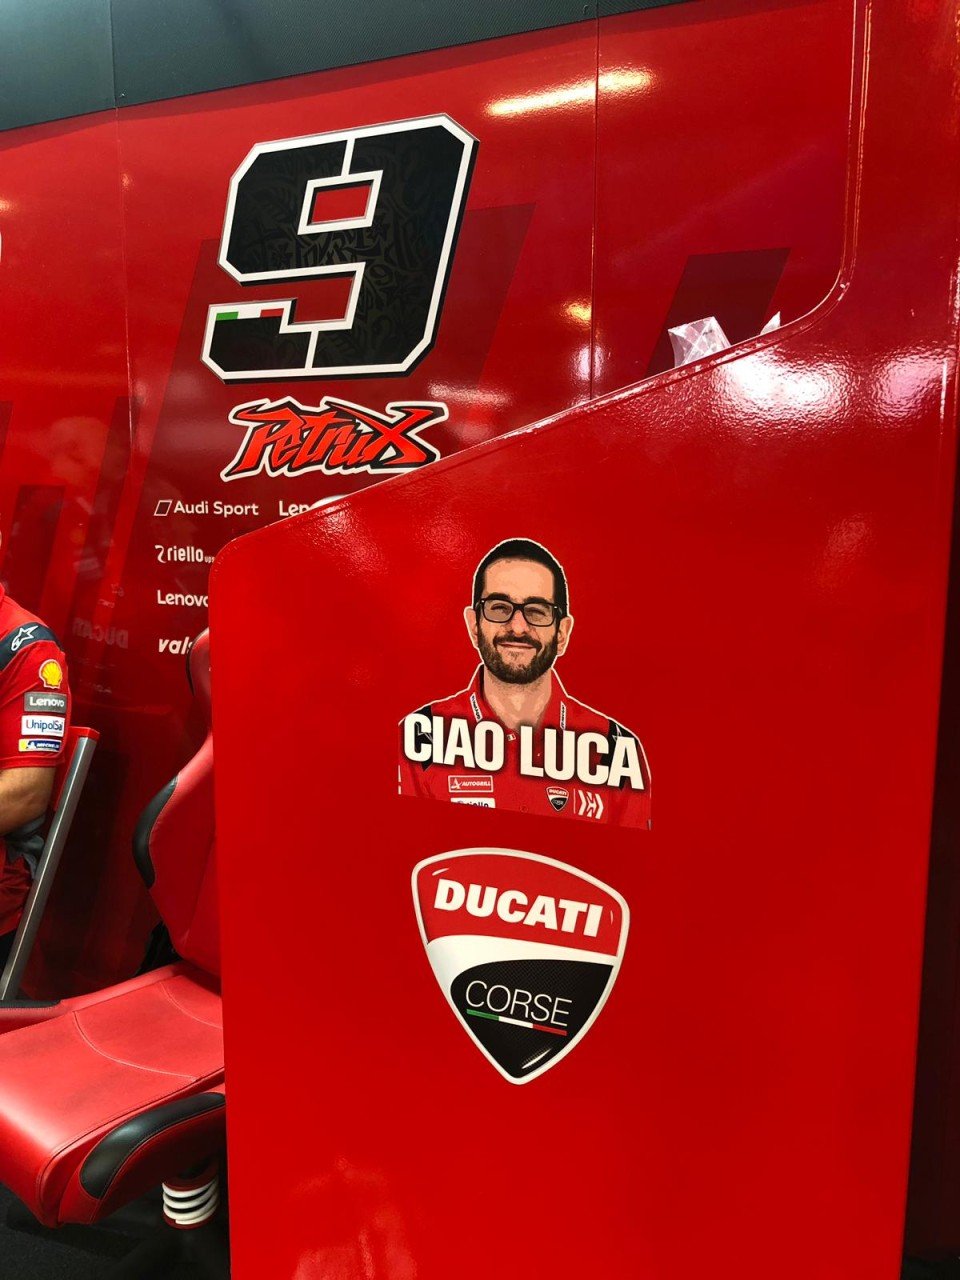 MotoGP: Danilo Petrucci pays tribute to Luca Semprini in his garage